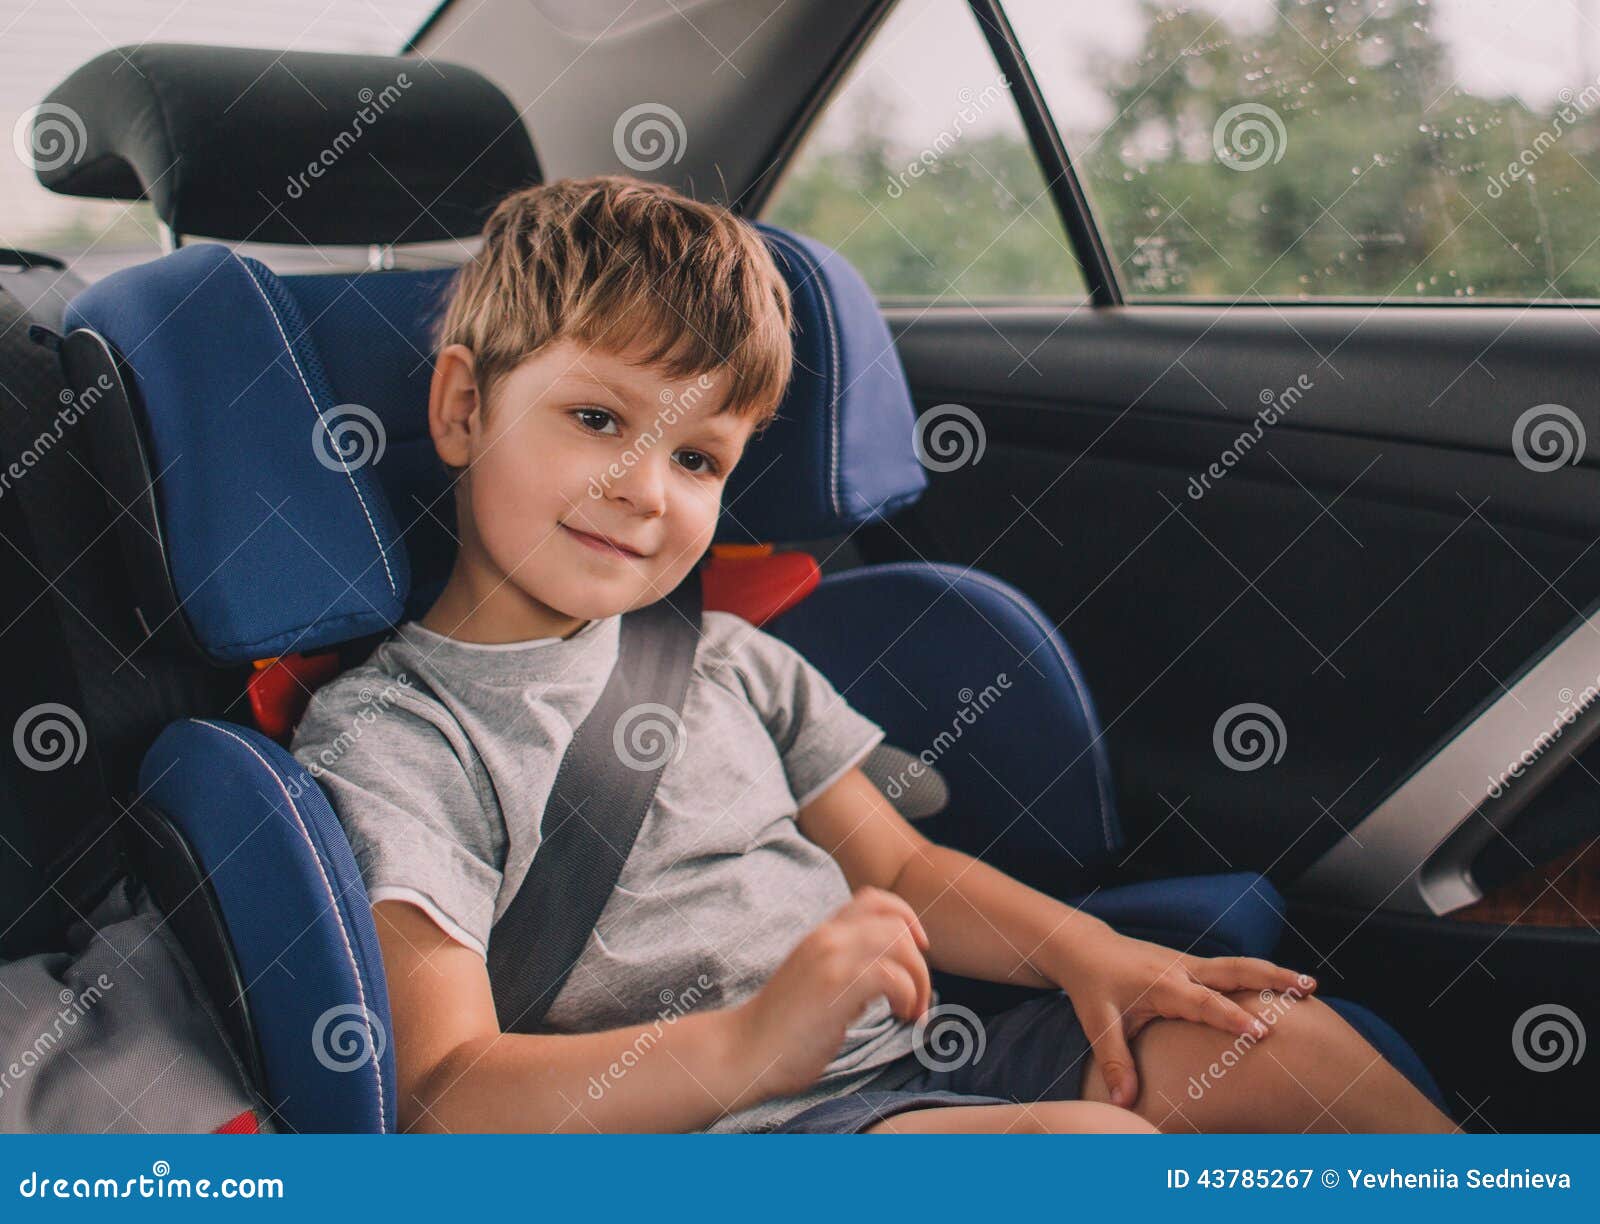 boy sitting in safety car seat